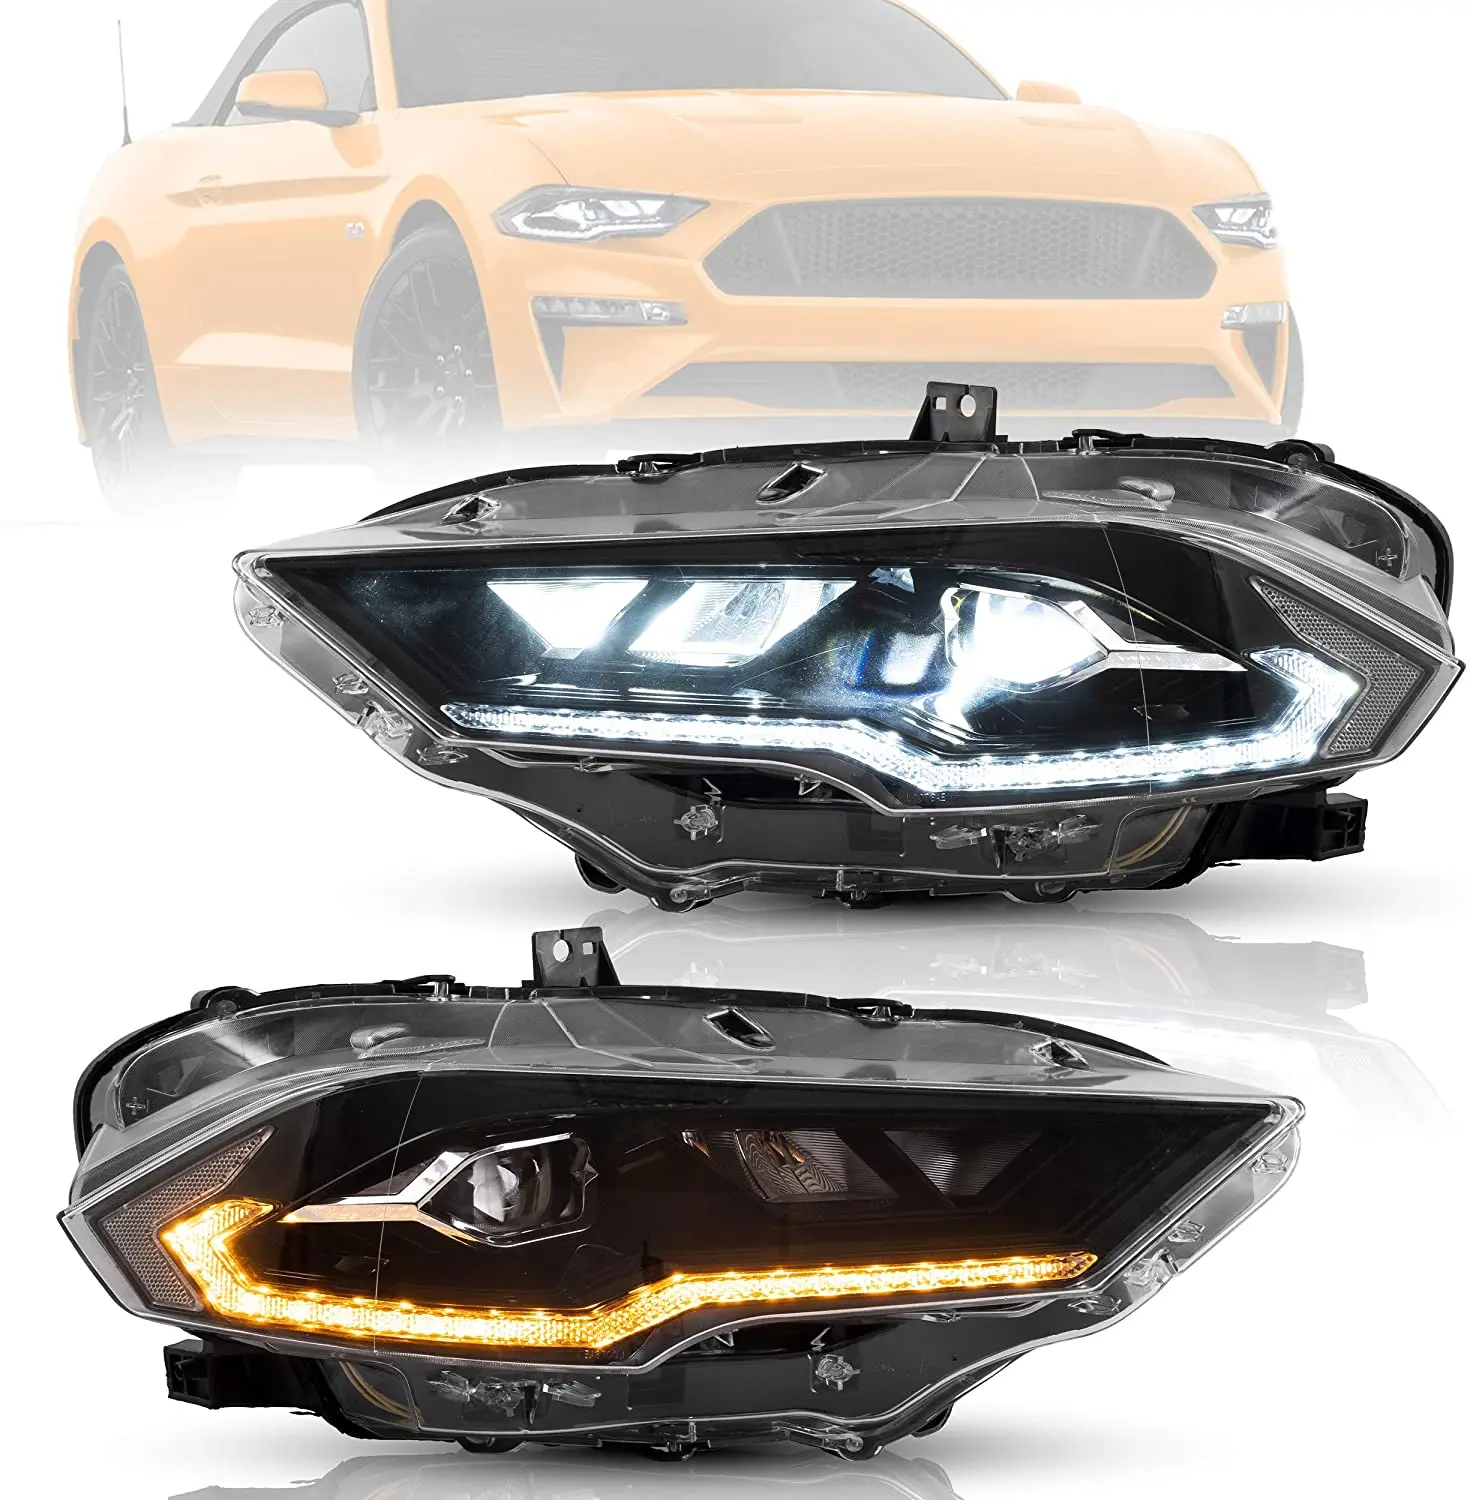 Customized FULL LED Headlight Dual Beam for 18-20 Mustang Passenger Side